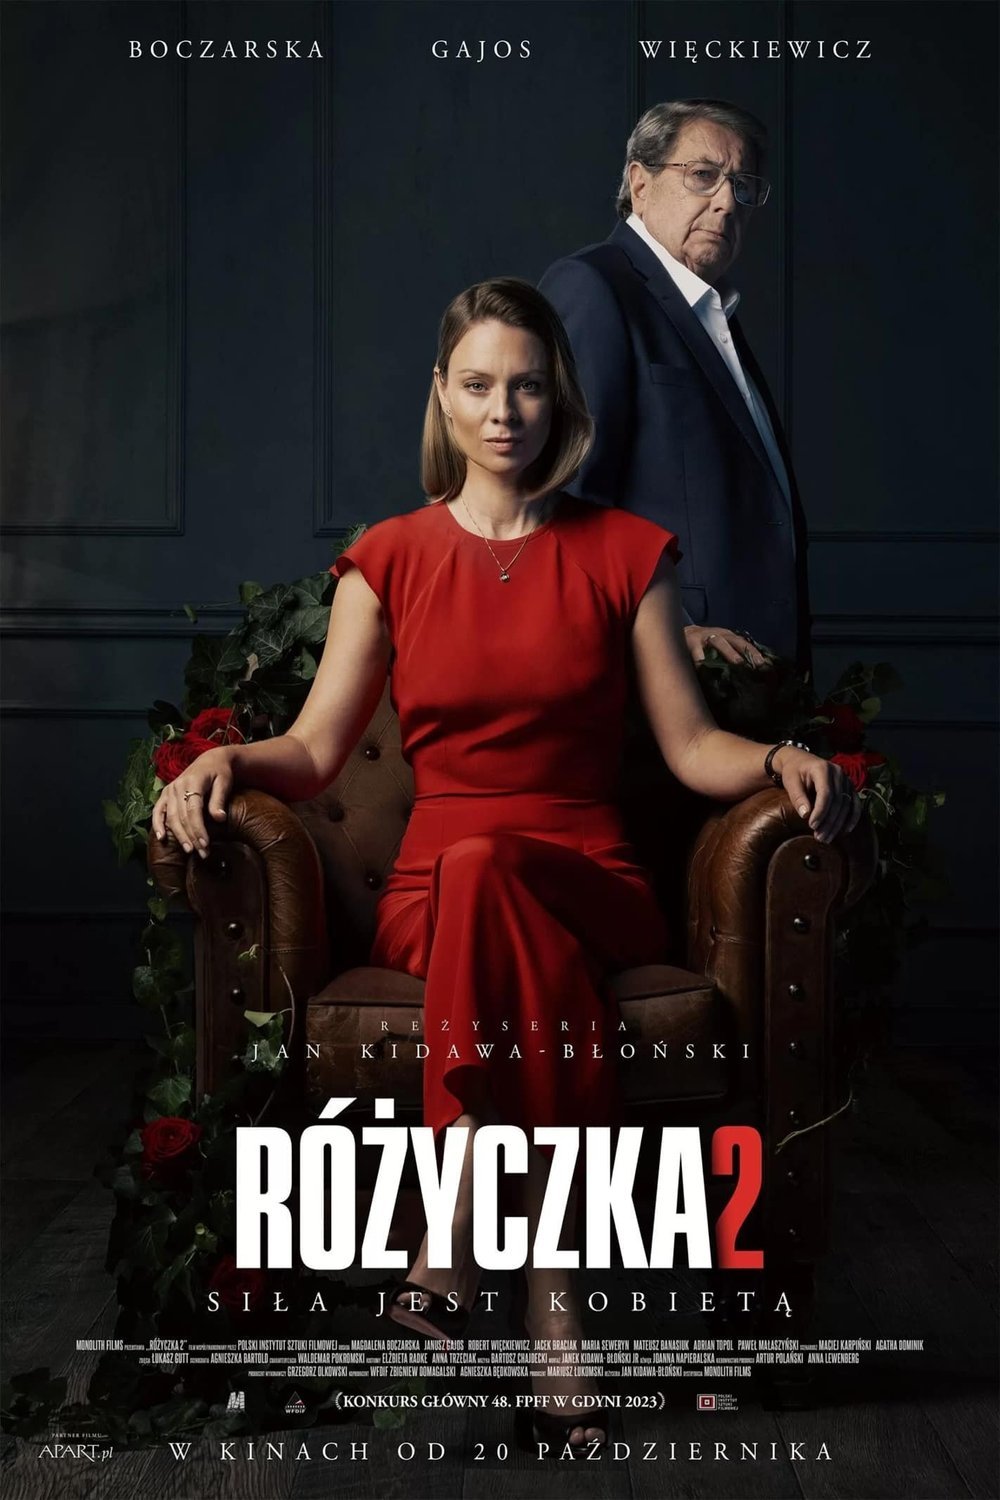 Polish poster of the movie Rózyczka 2